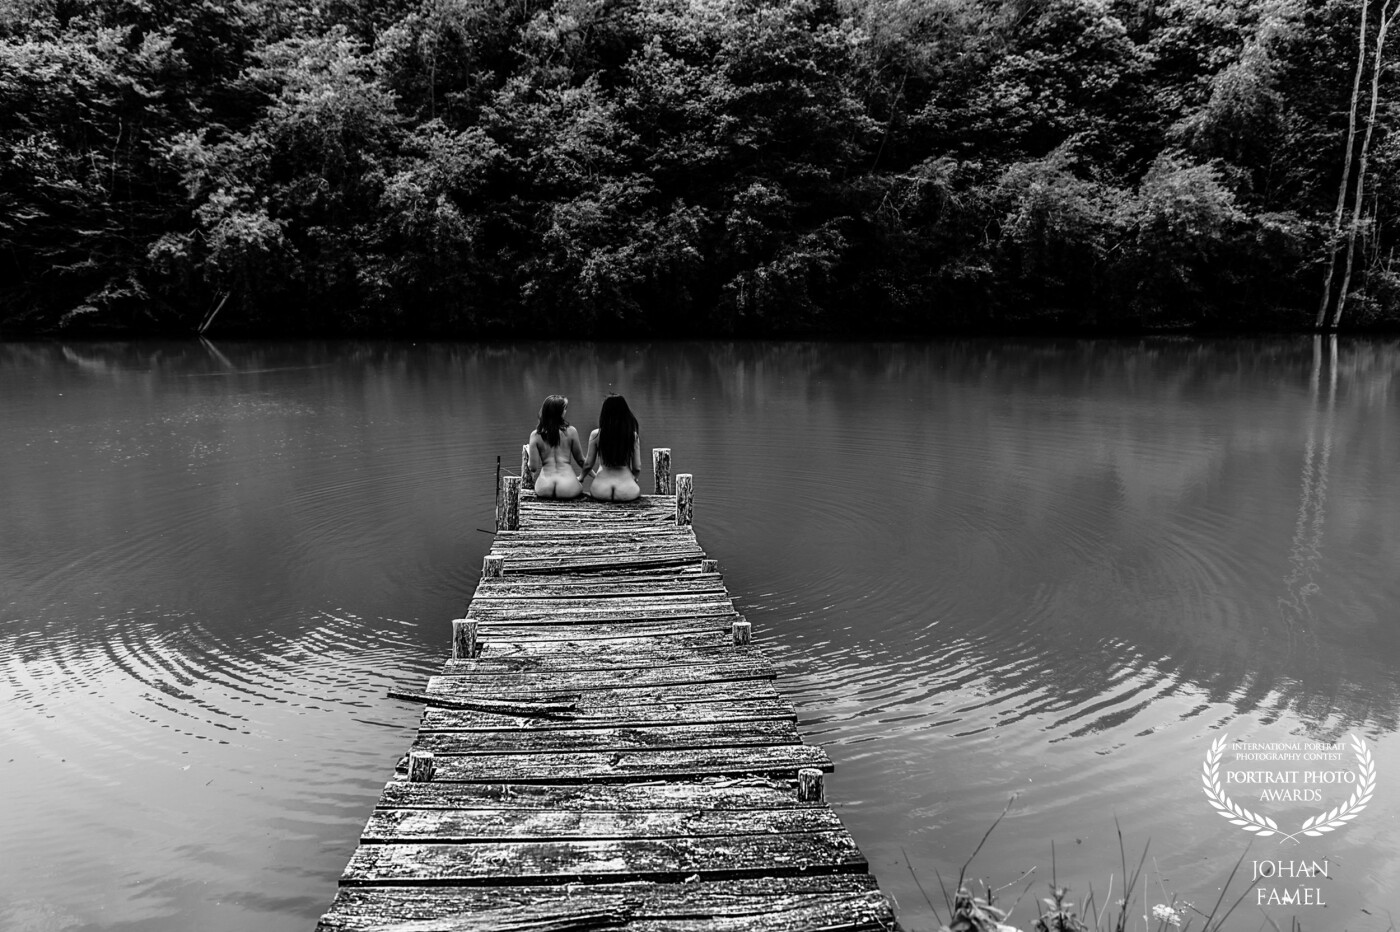 Un jour au bord d'un étang un petit ponton nous inspirer cette image de simplicité et de liberté, Charlotte et son amie de dos les pieds dans l'eau.